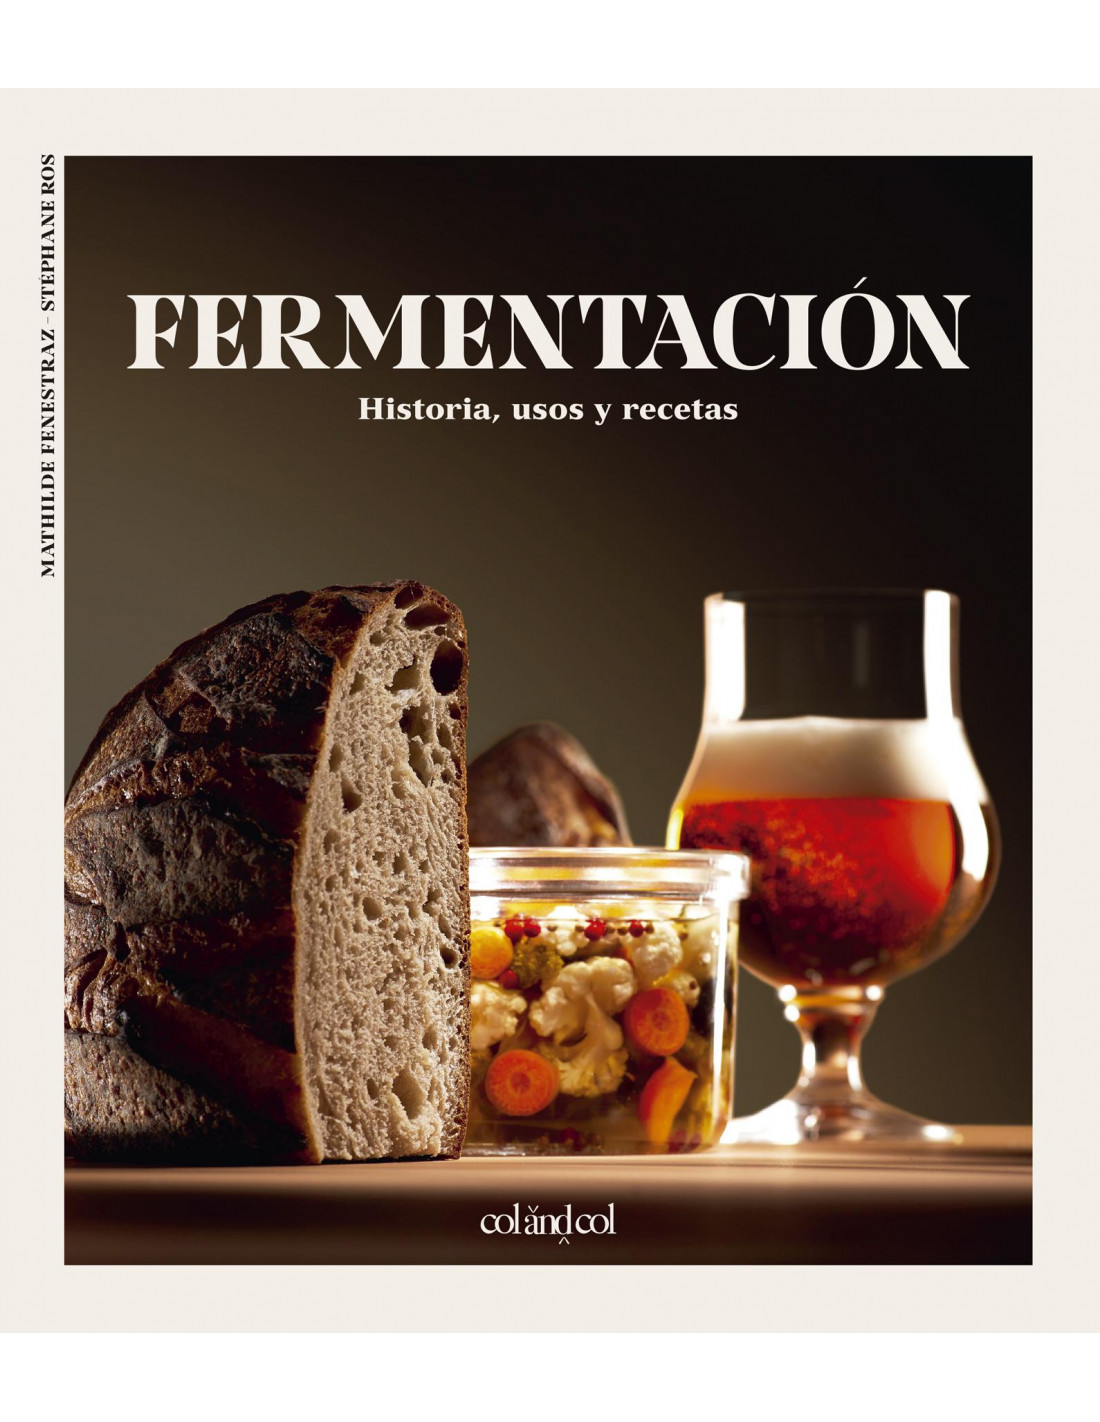 Todo sobre la fermentadora Brod & Taylor: usos y recetas - Blog Conasi